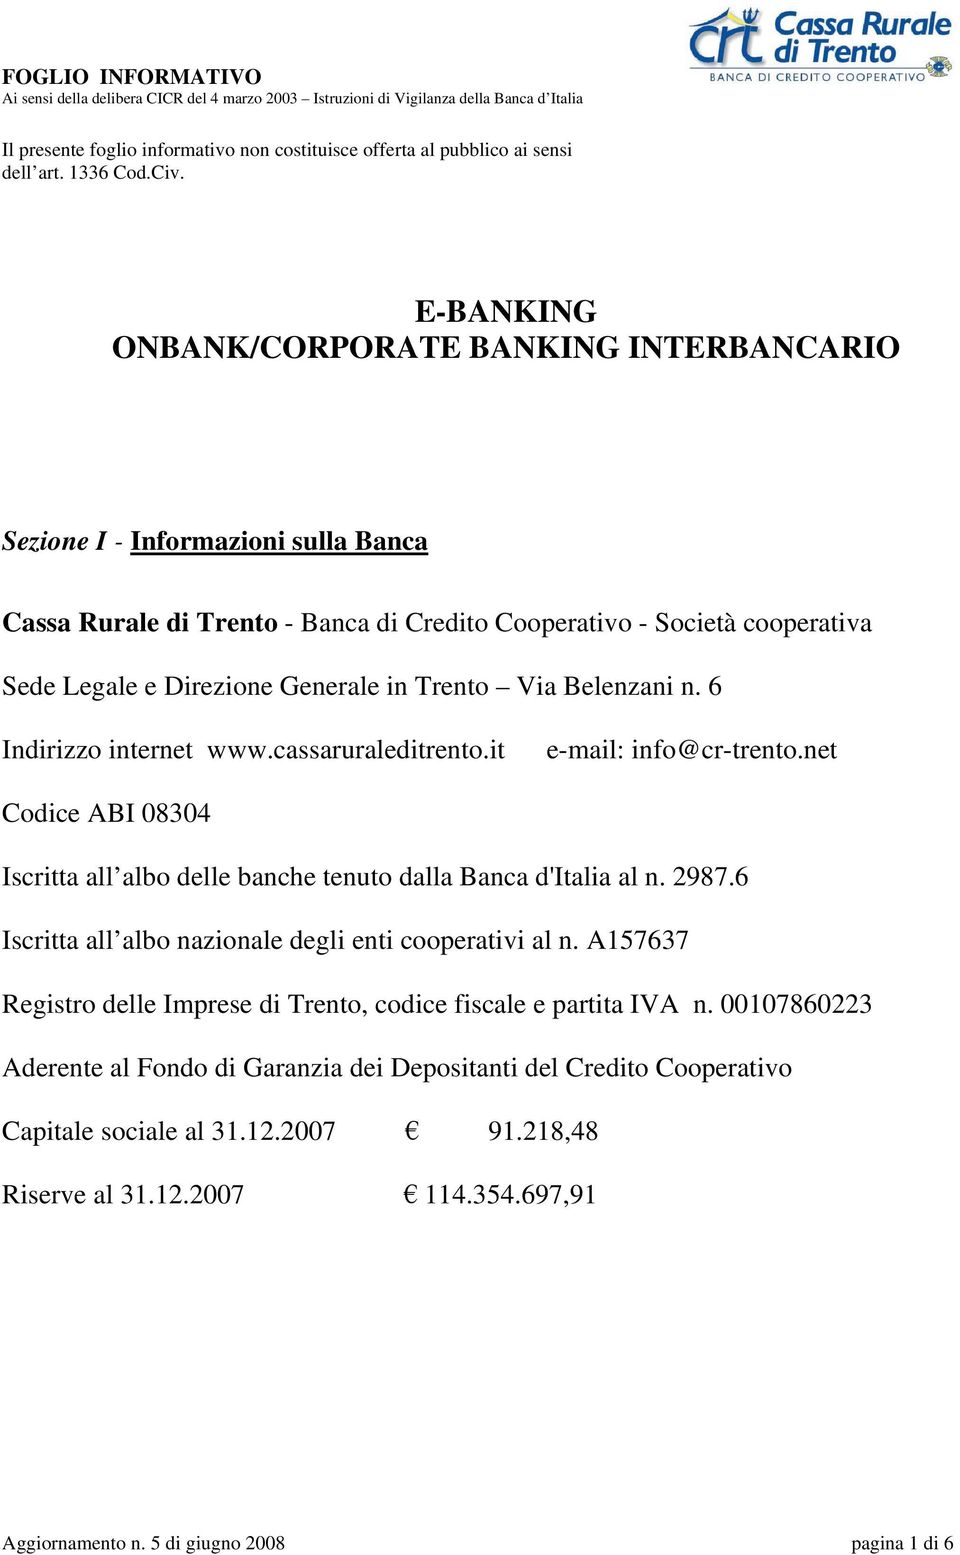 Trento Via Belenzani n. 6 Indirizzo internet www.cassaruraleditrento.it e-mail: info@cr-trento.net Codice ABI 08304 Iscritta all albo delle banche tenuto dalla Banca d'italia al n. 2987.